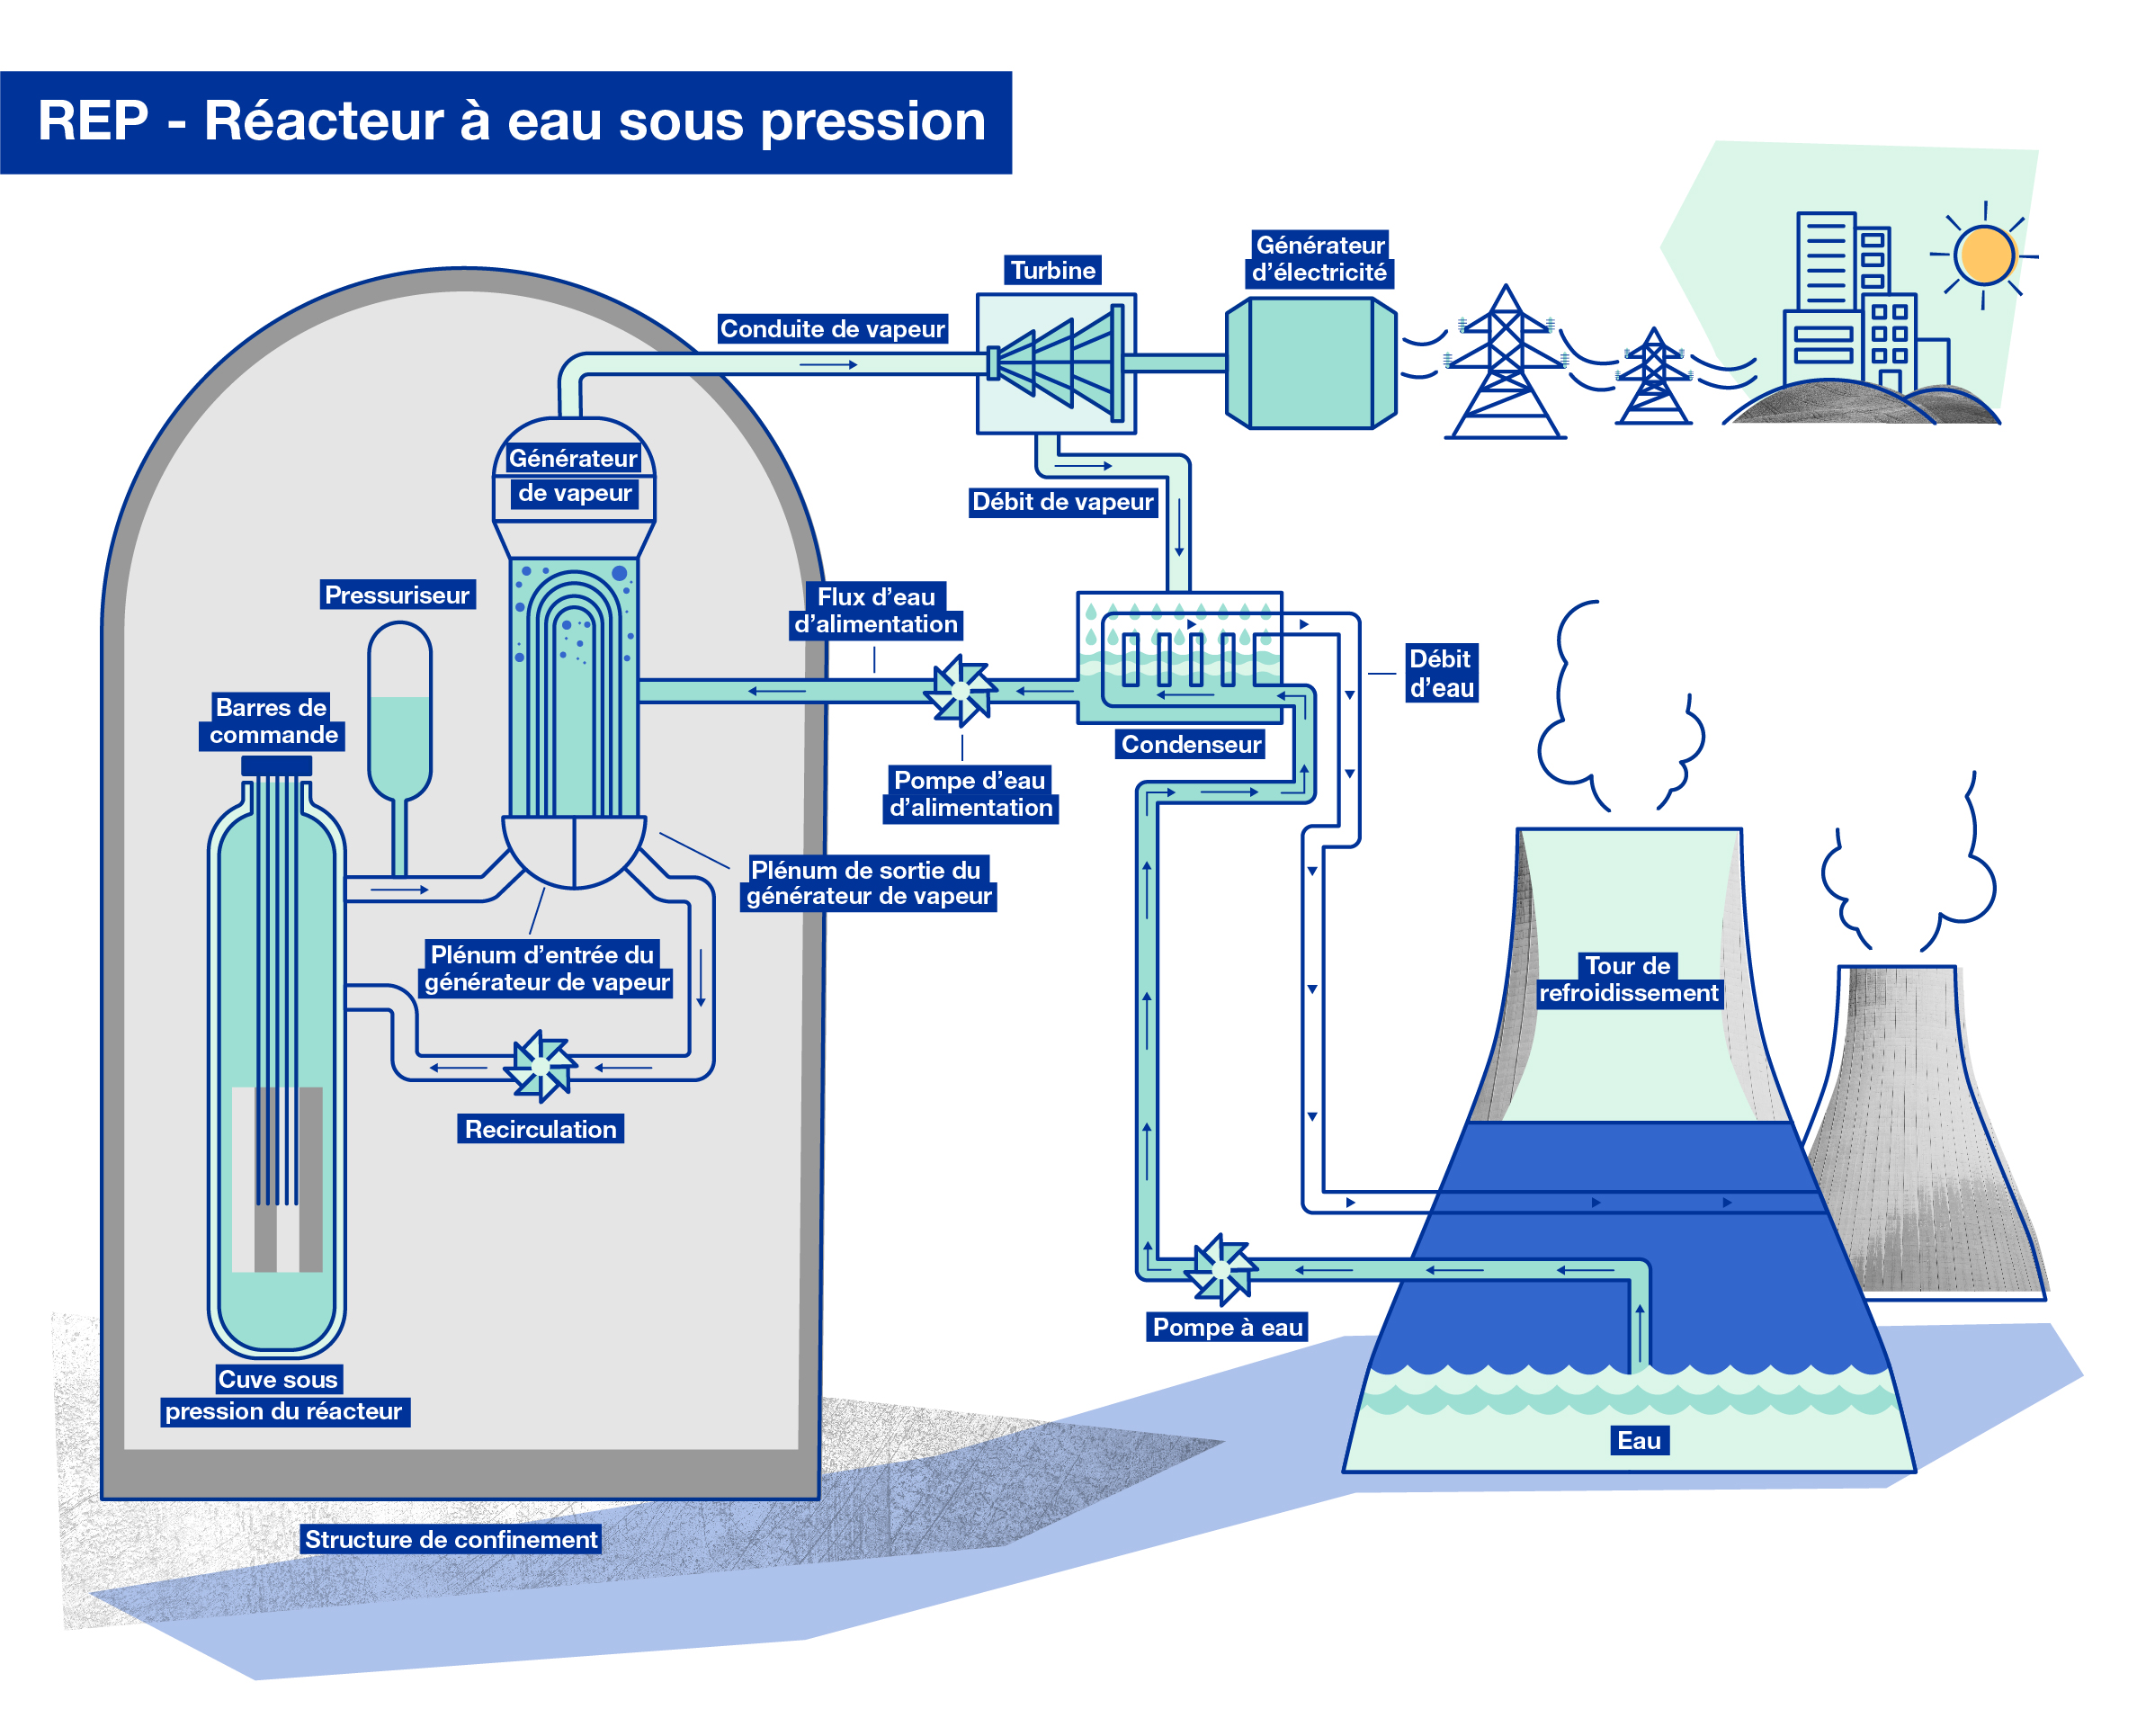 Повышение воды горячей. Реактор с водой под давлением. PWR реактор. Ядерный реактор с водой под давлением. Водно водяные энергетические реакторы.